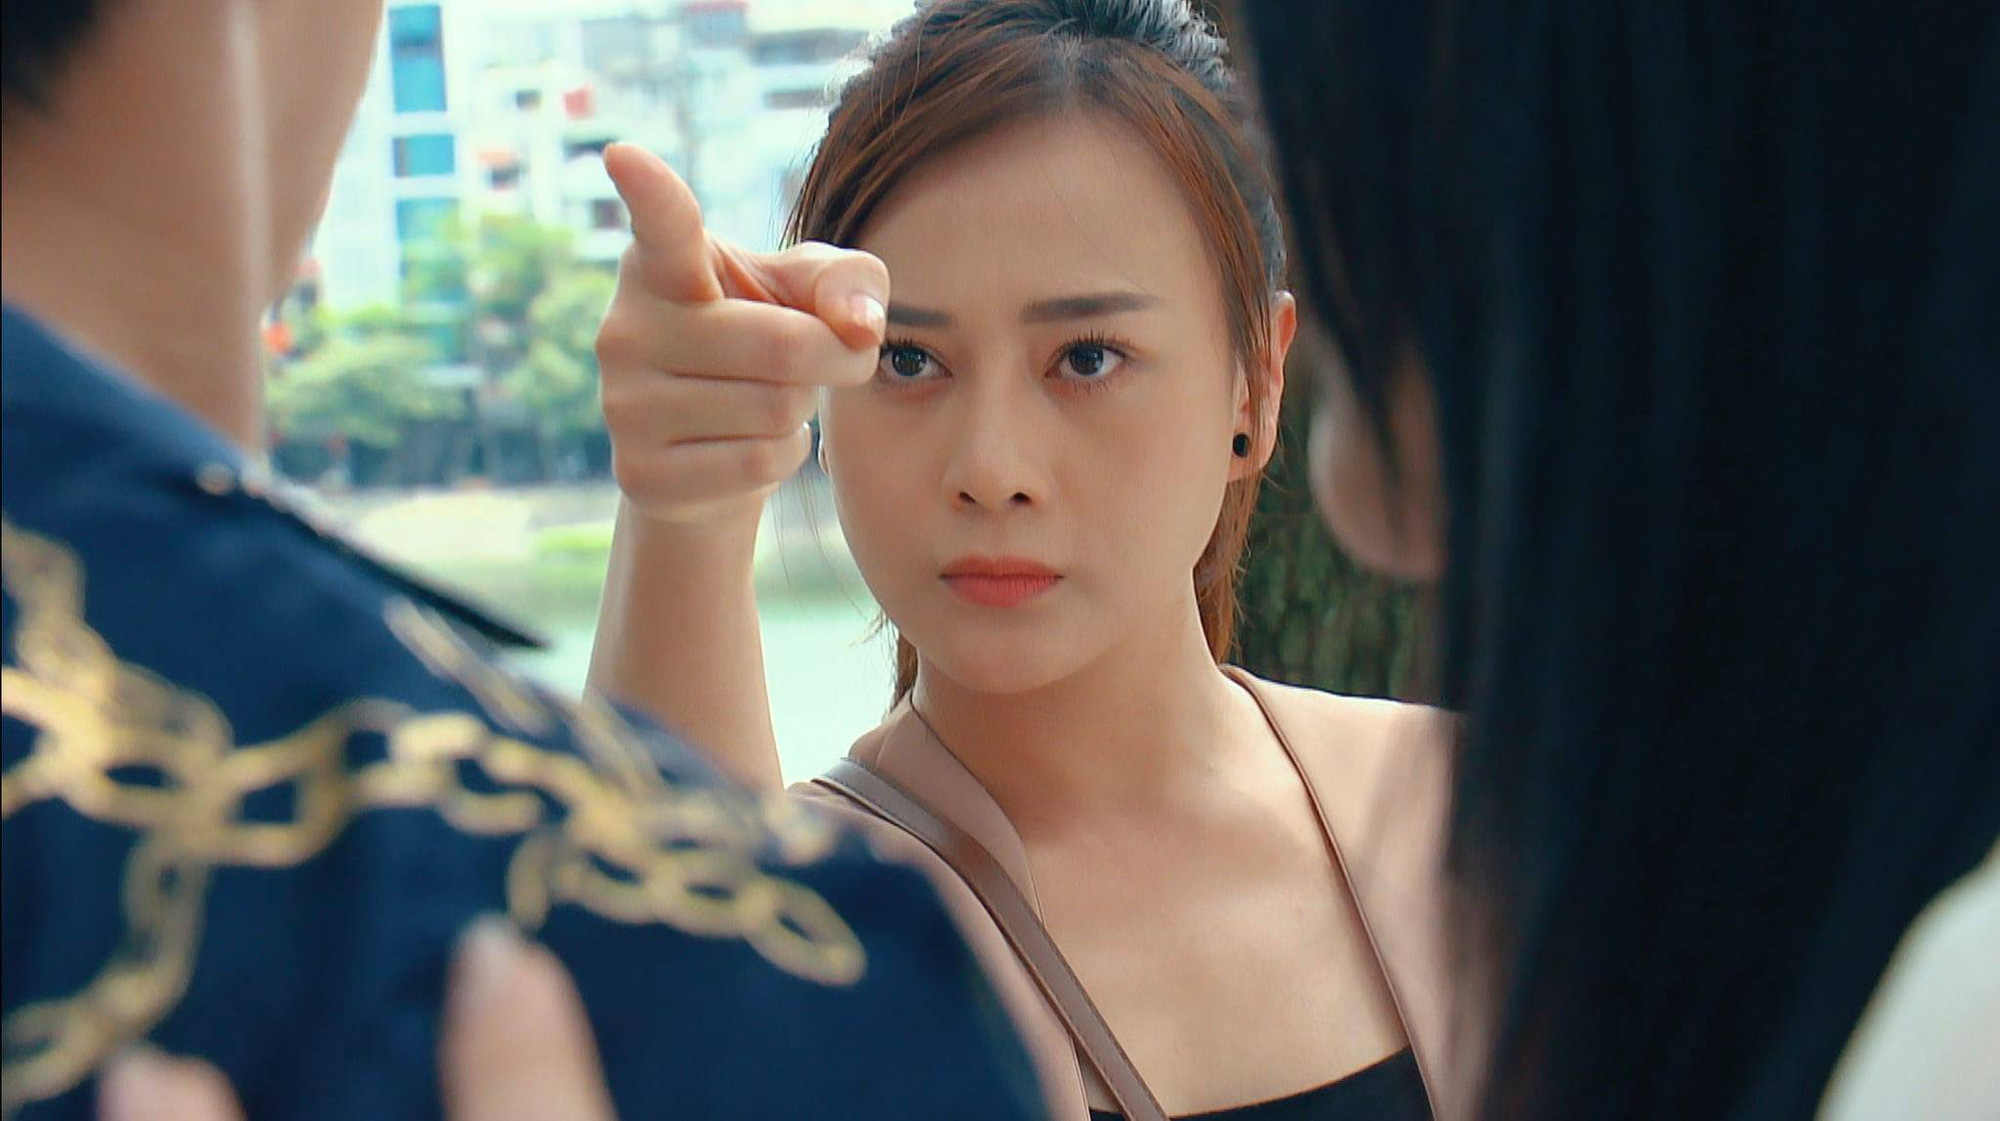 Đây là nữ chính phim remake đỉnh nhất truyền hình Việt: Nhan sắc, thời trang cho cô Nam (Hương Vị Tình Thân) ngửi khói - Ảnh 8.